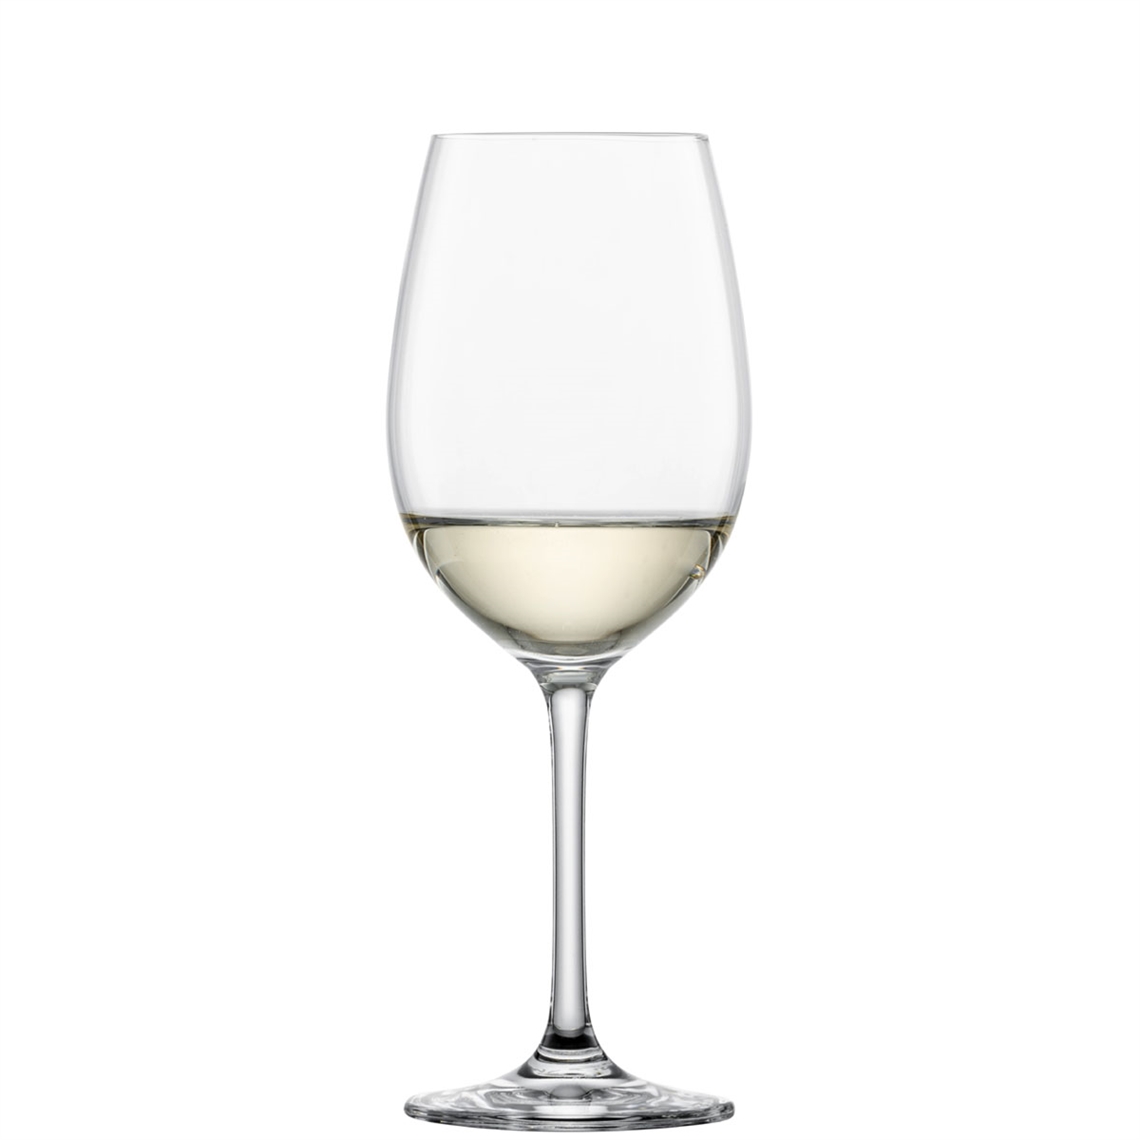 Schott Zwiesel Restaurant Ivento - White Wine Glass 349ml